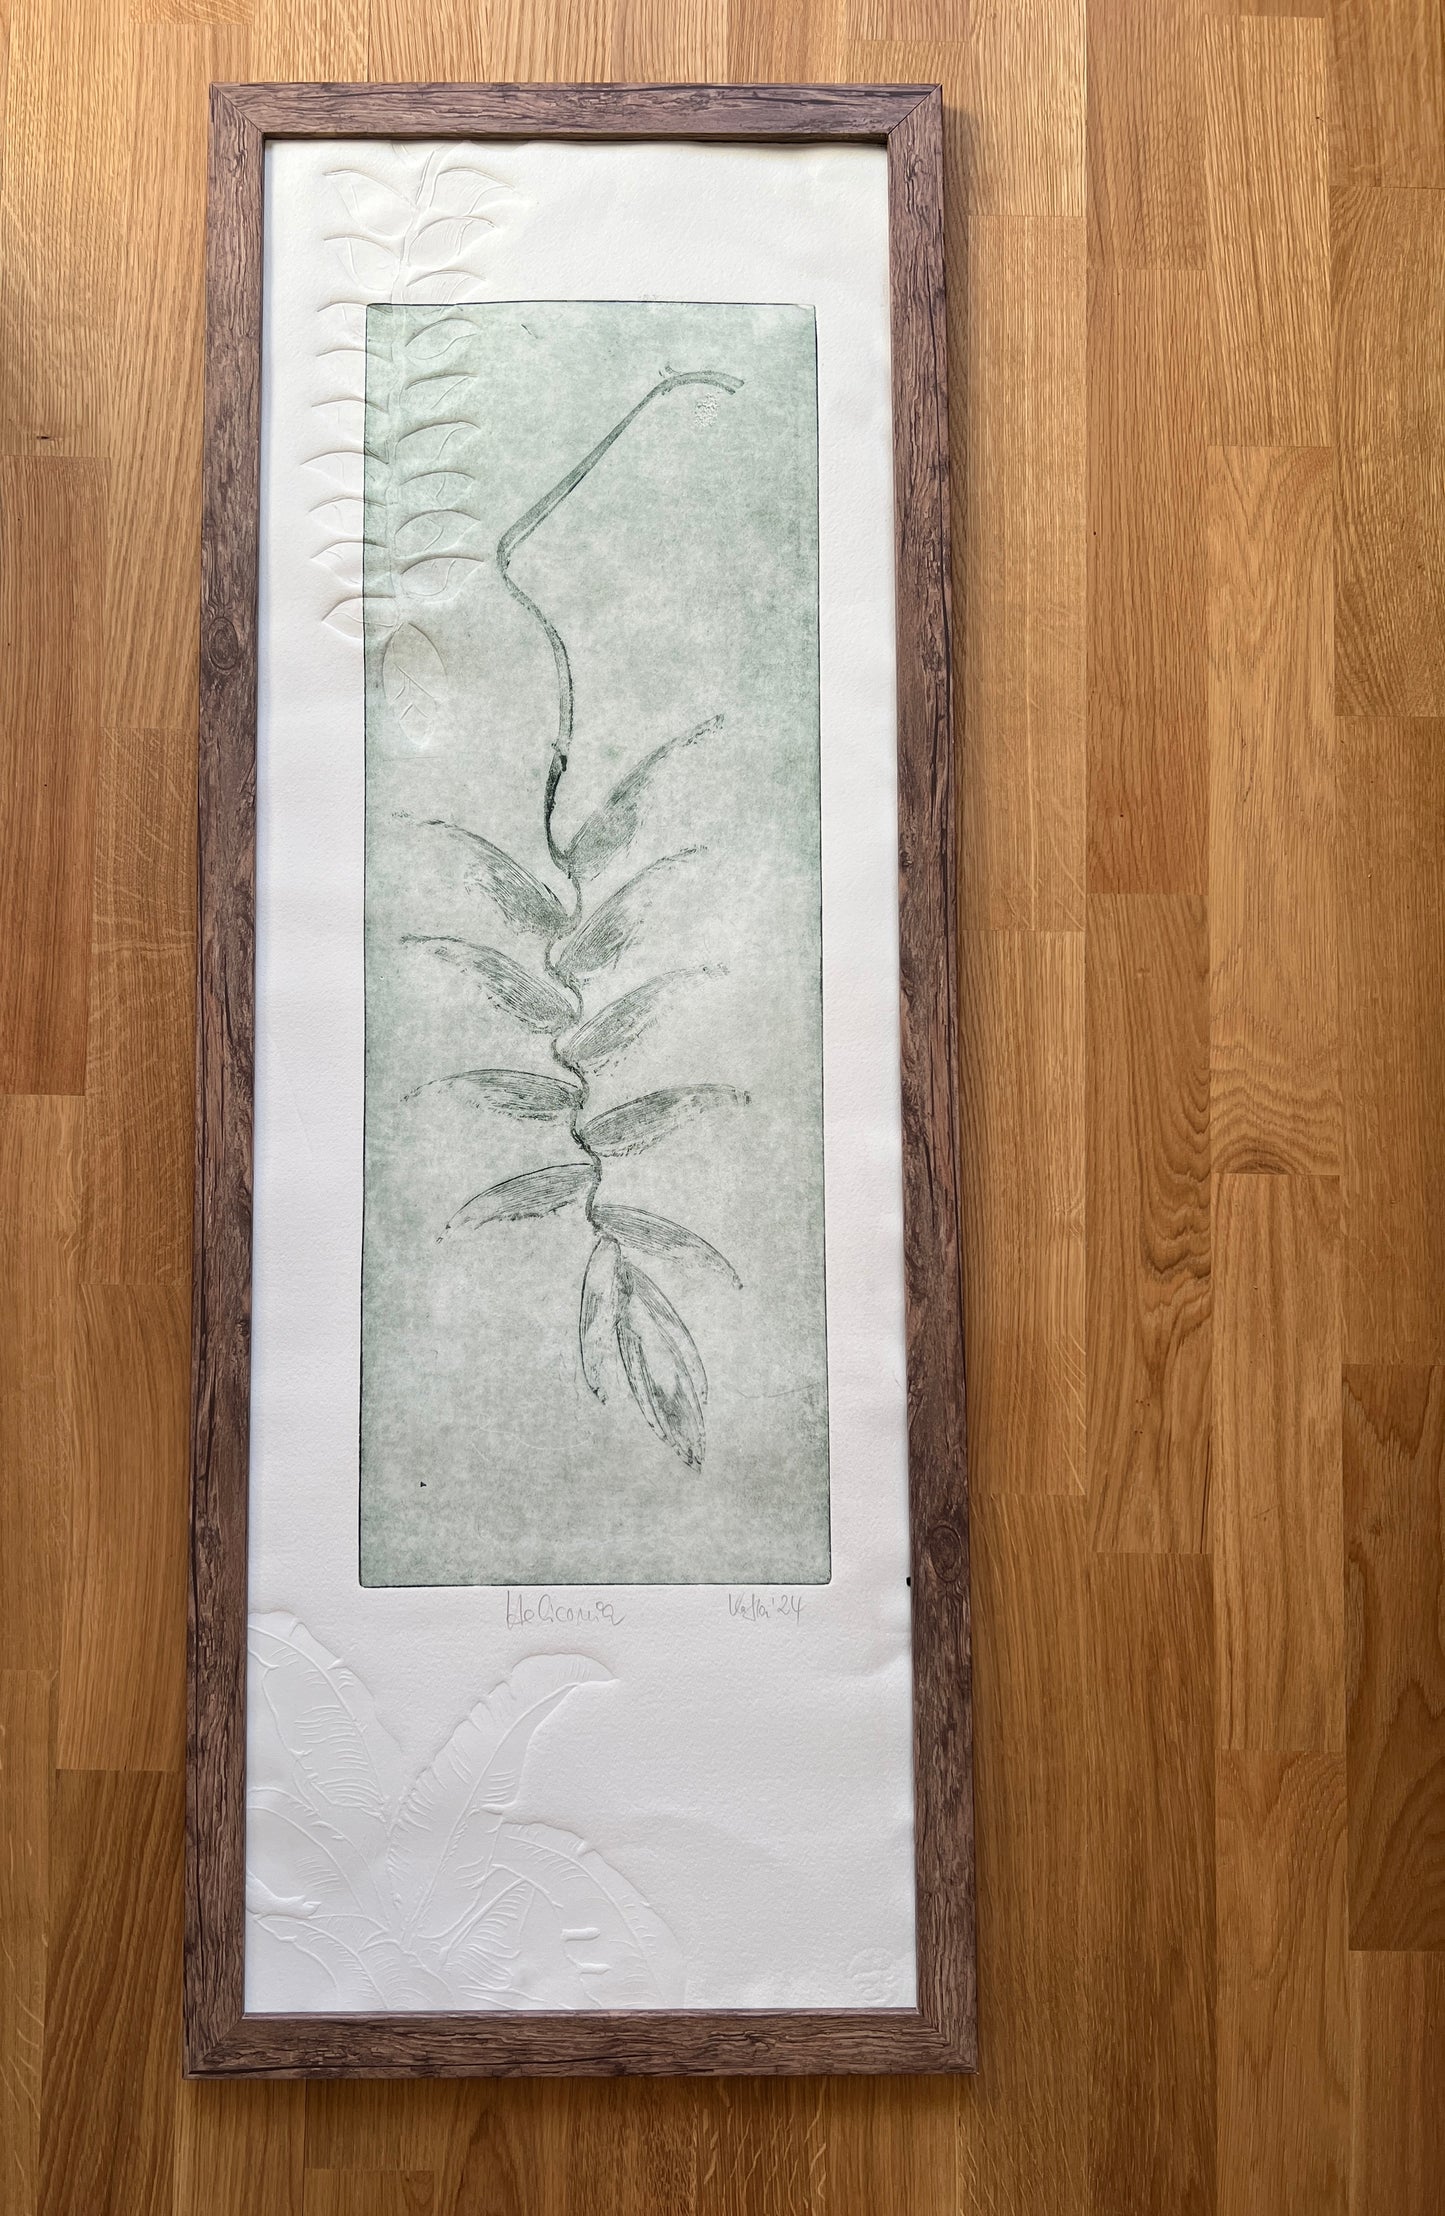 HELICONIA Originaldruckgrafik Radierung Vernis mou 35x100 cm